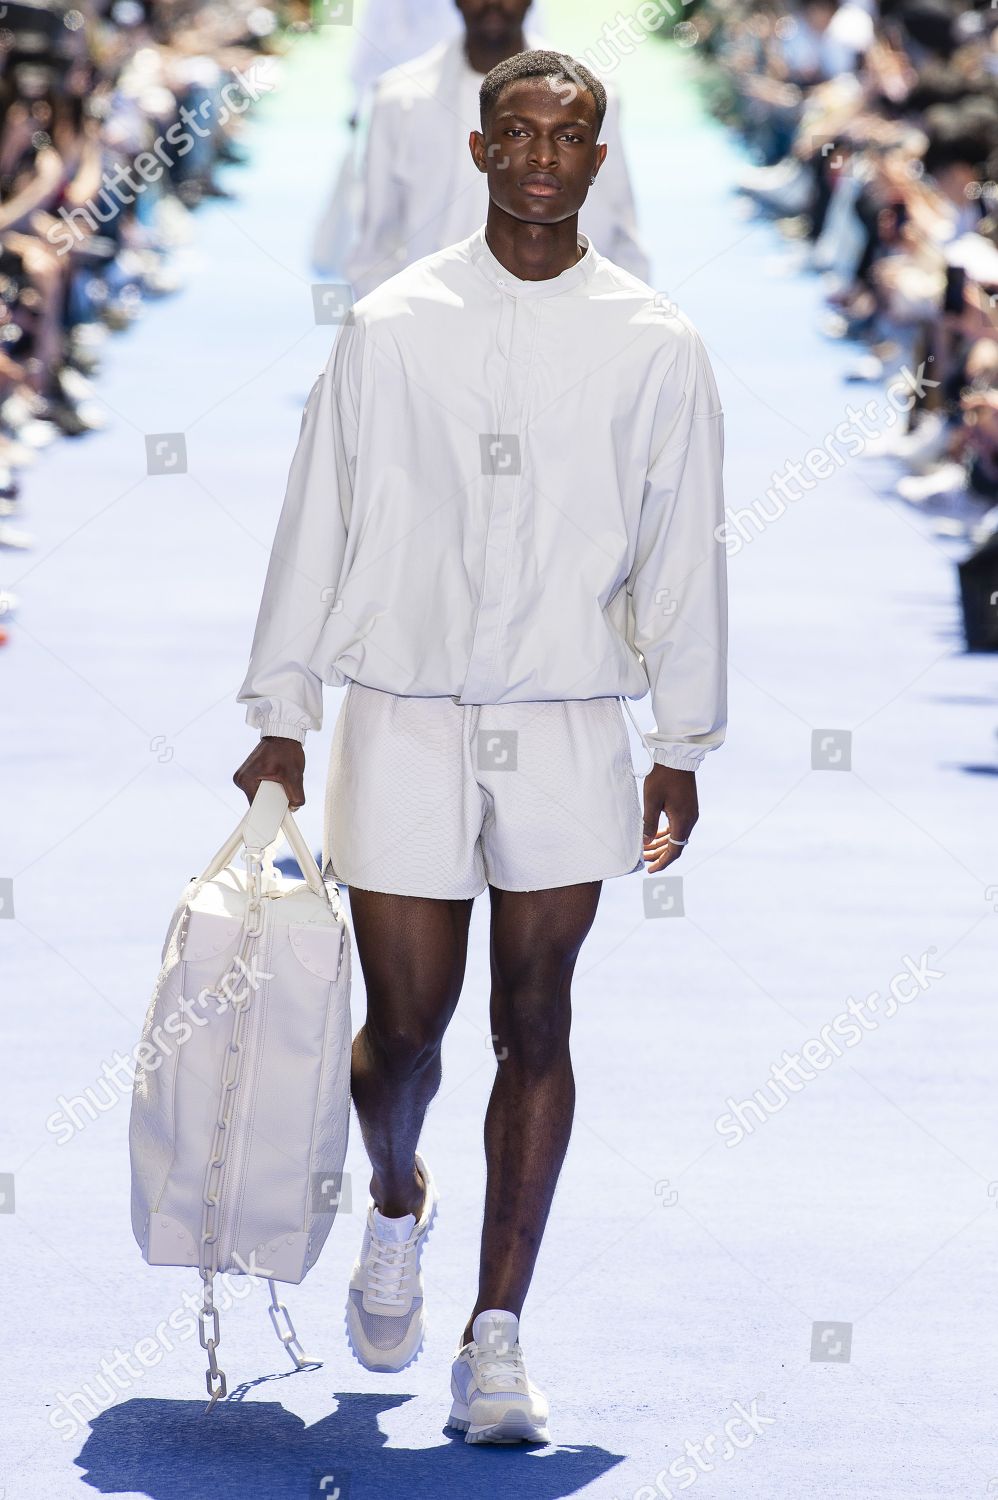 Louis Vuitton Spring 2018 Show at Paris Fashion Week Men's